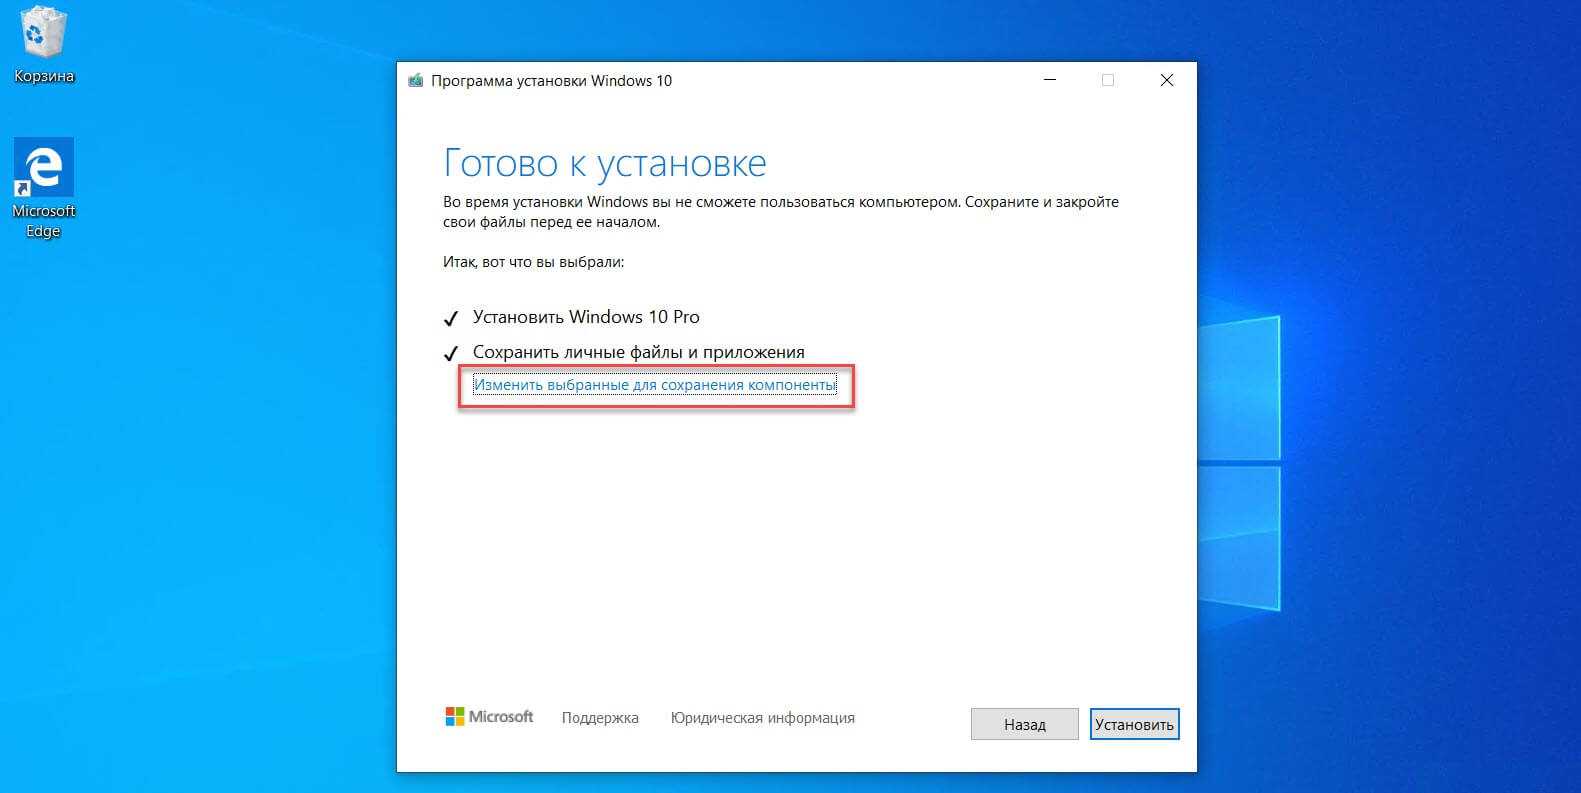 Как сохранить данные при переустановке. Установка Windows 10. Программа установки виндовс 10. Установленная Windows 10. Файл Windows 10.